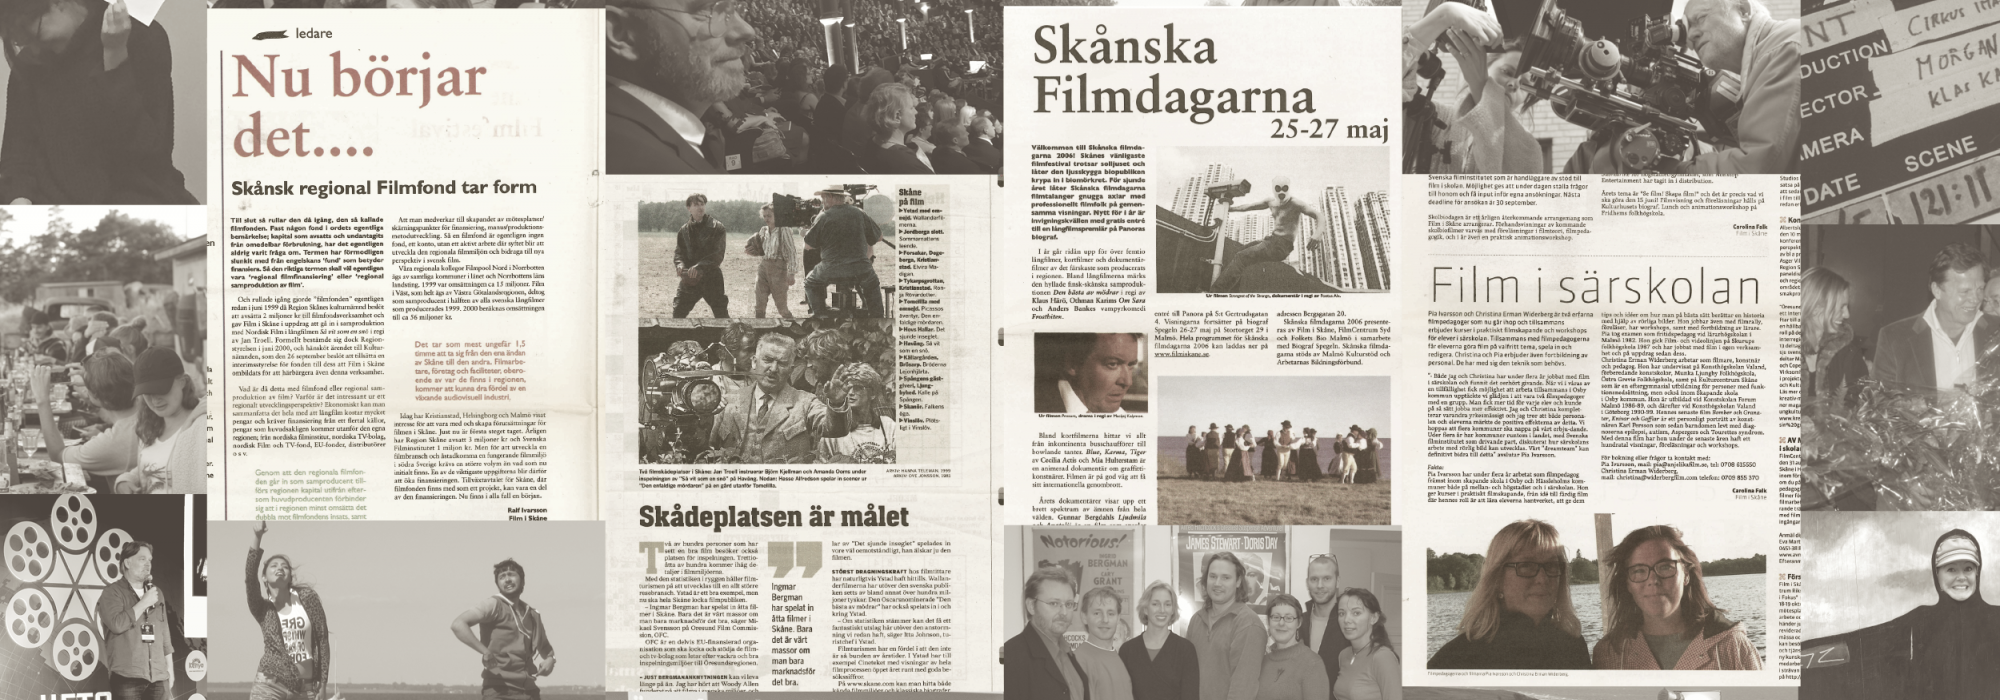 Collage av foton och artiklar om och med Film i Skåne